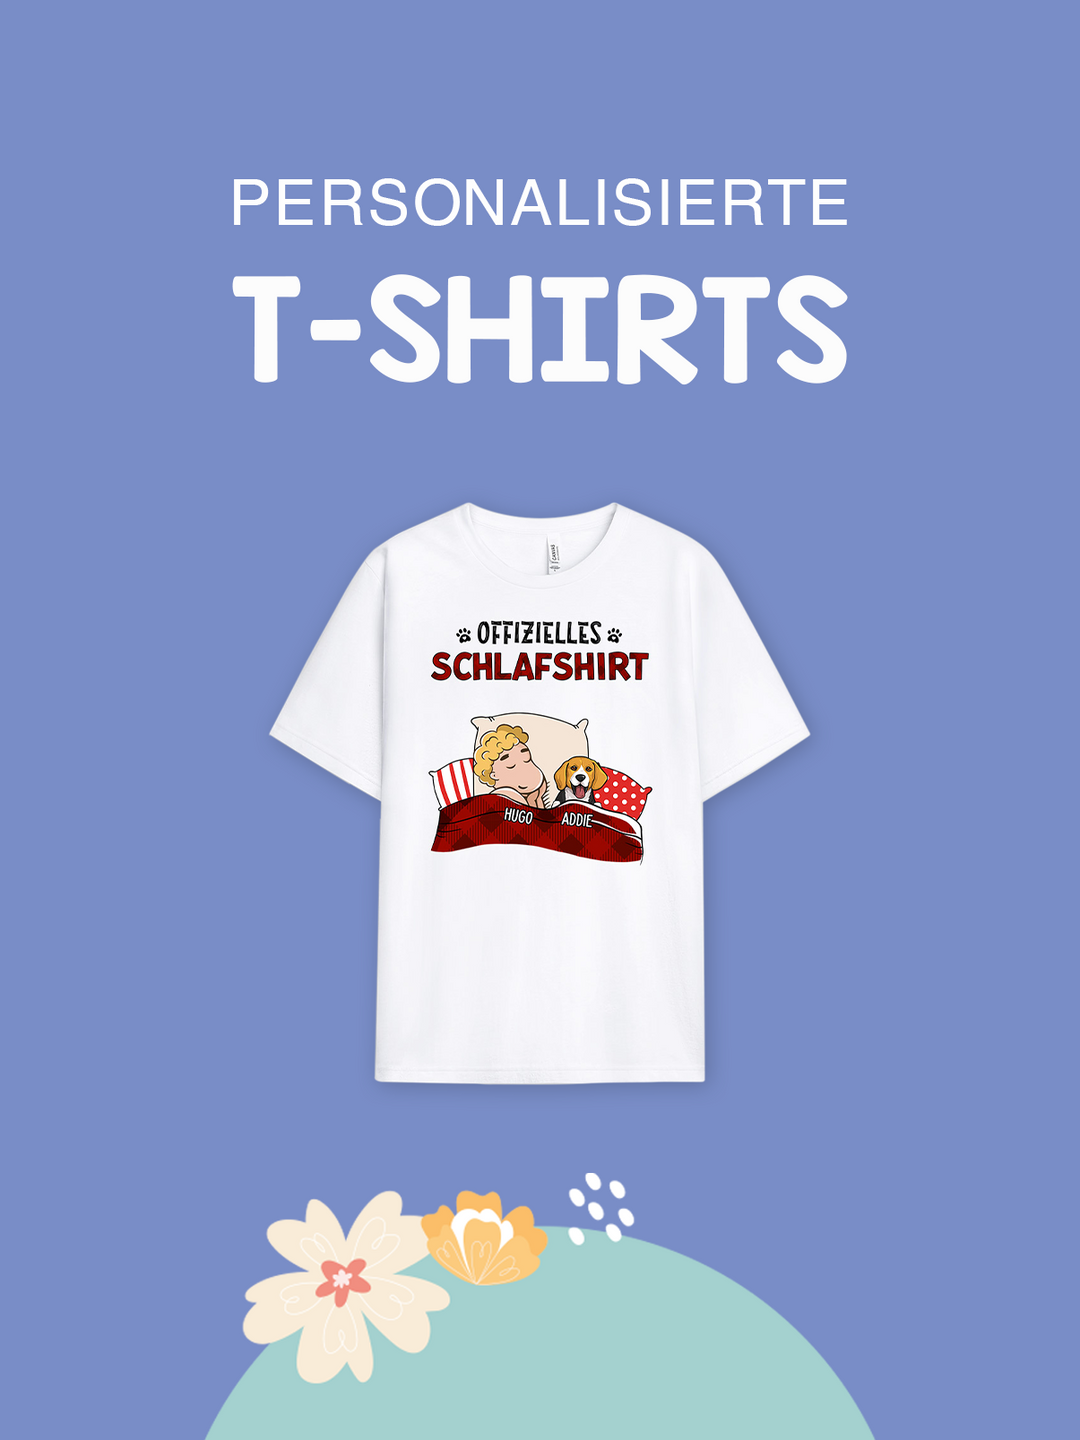 geschenke mall personalisierte t shirts